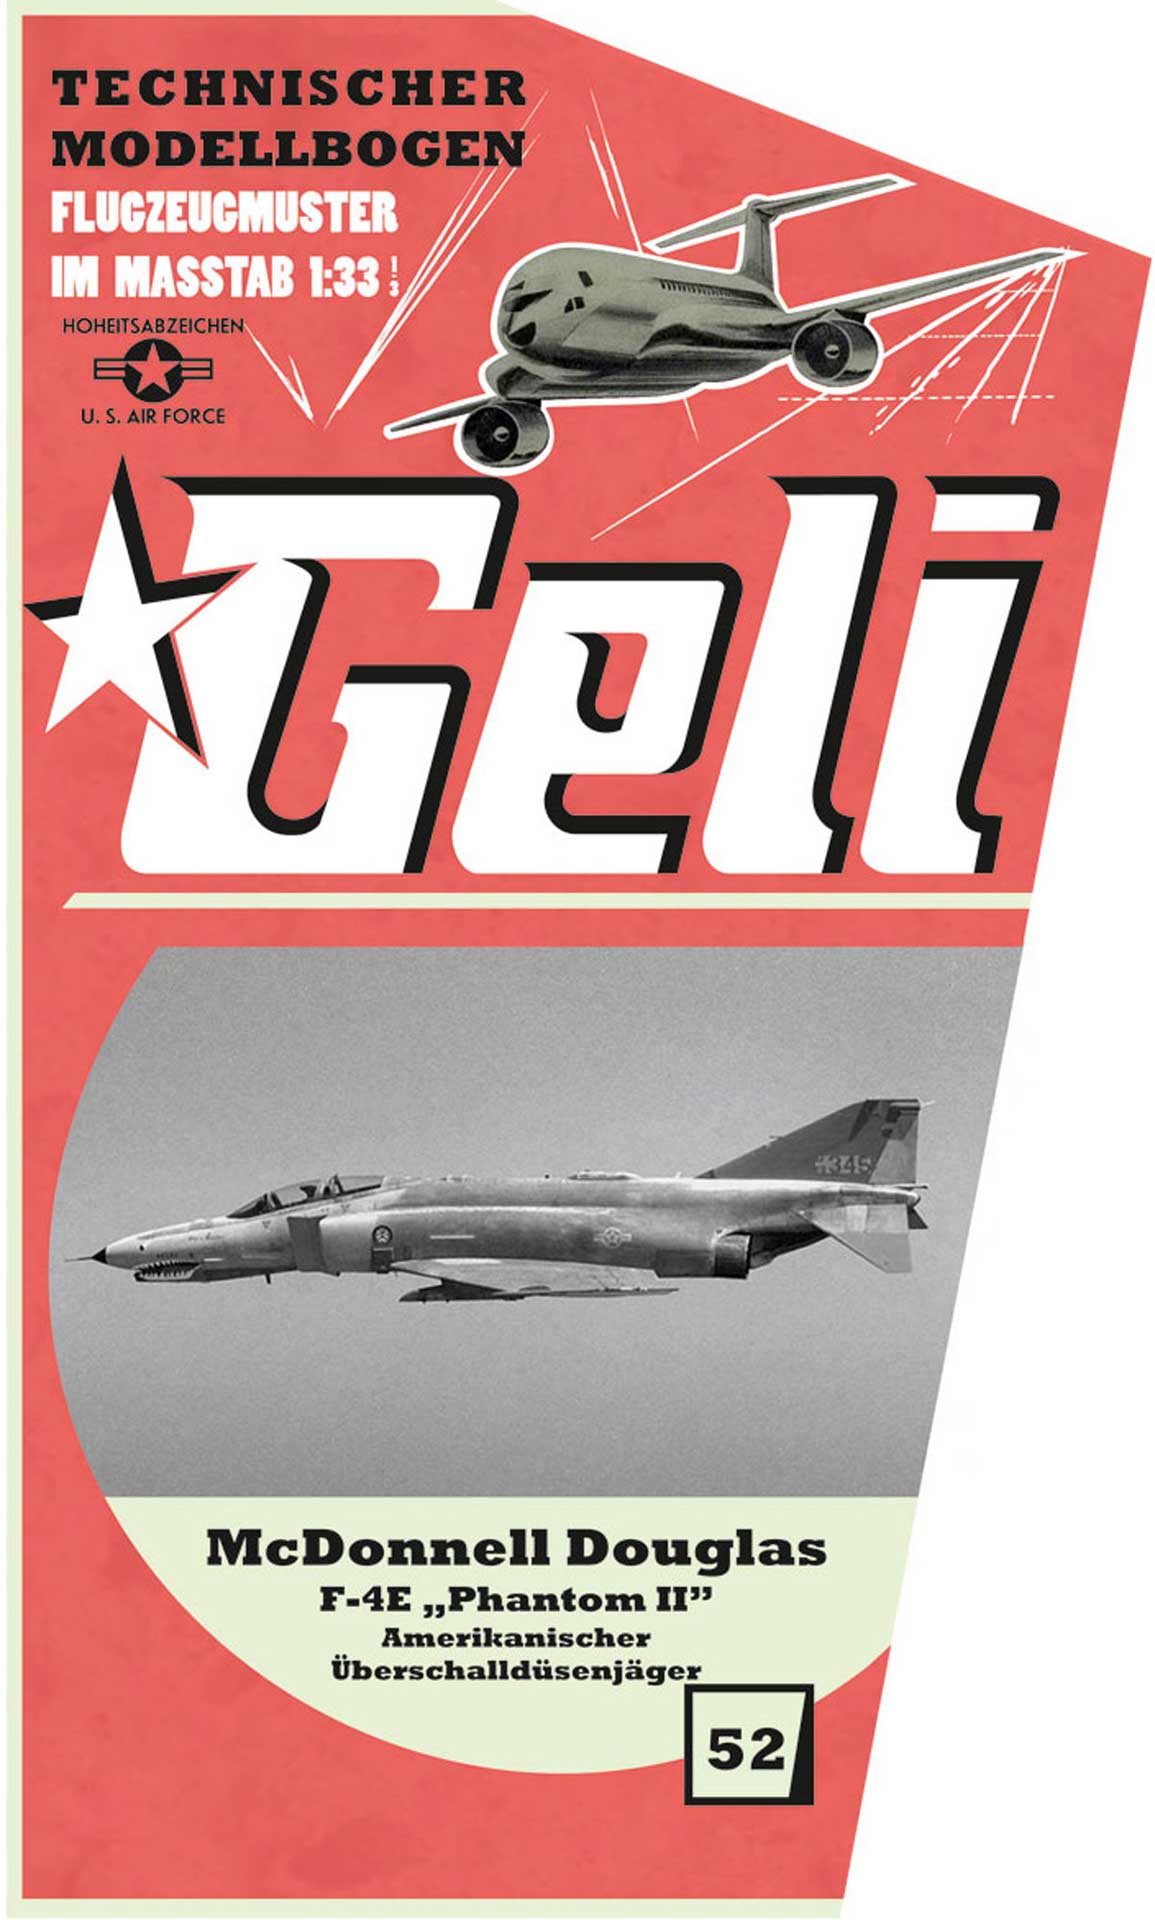 GELI MCDONNELL DOUGLAS F-4E KARTONMODELL